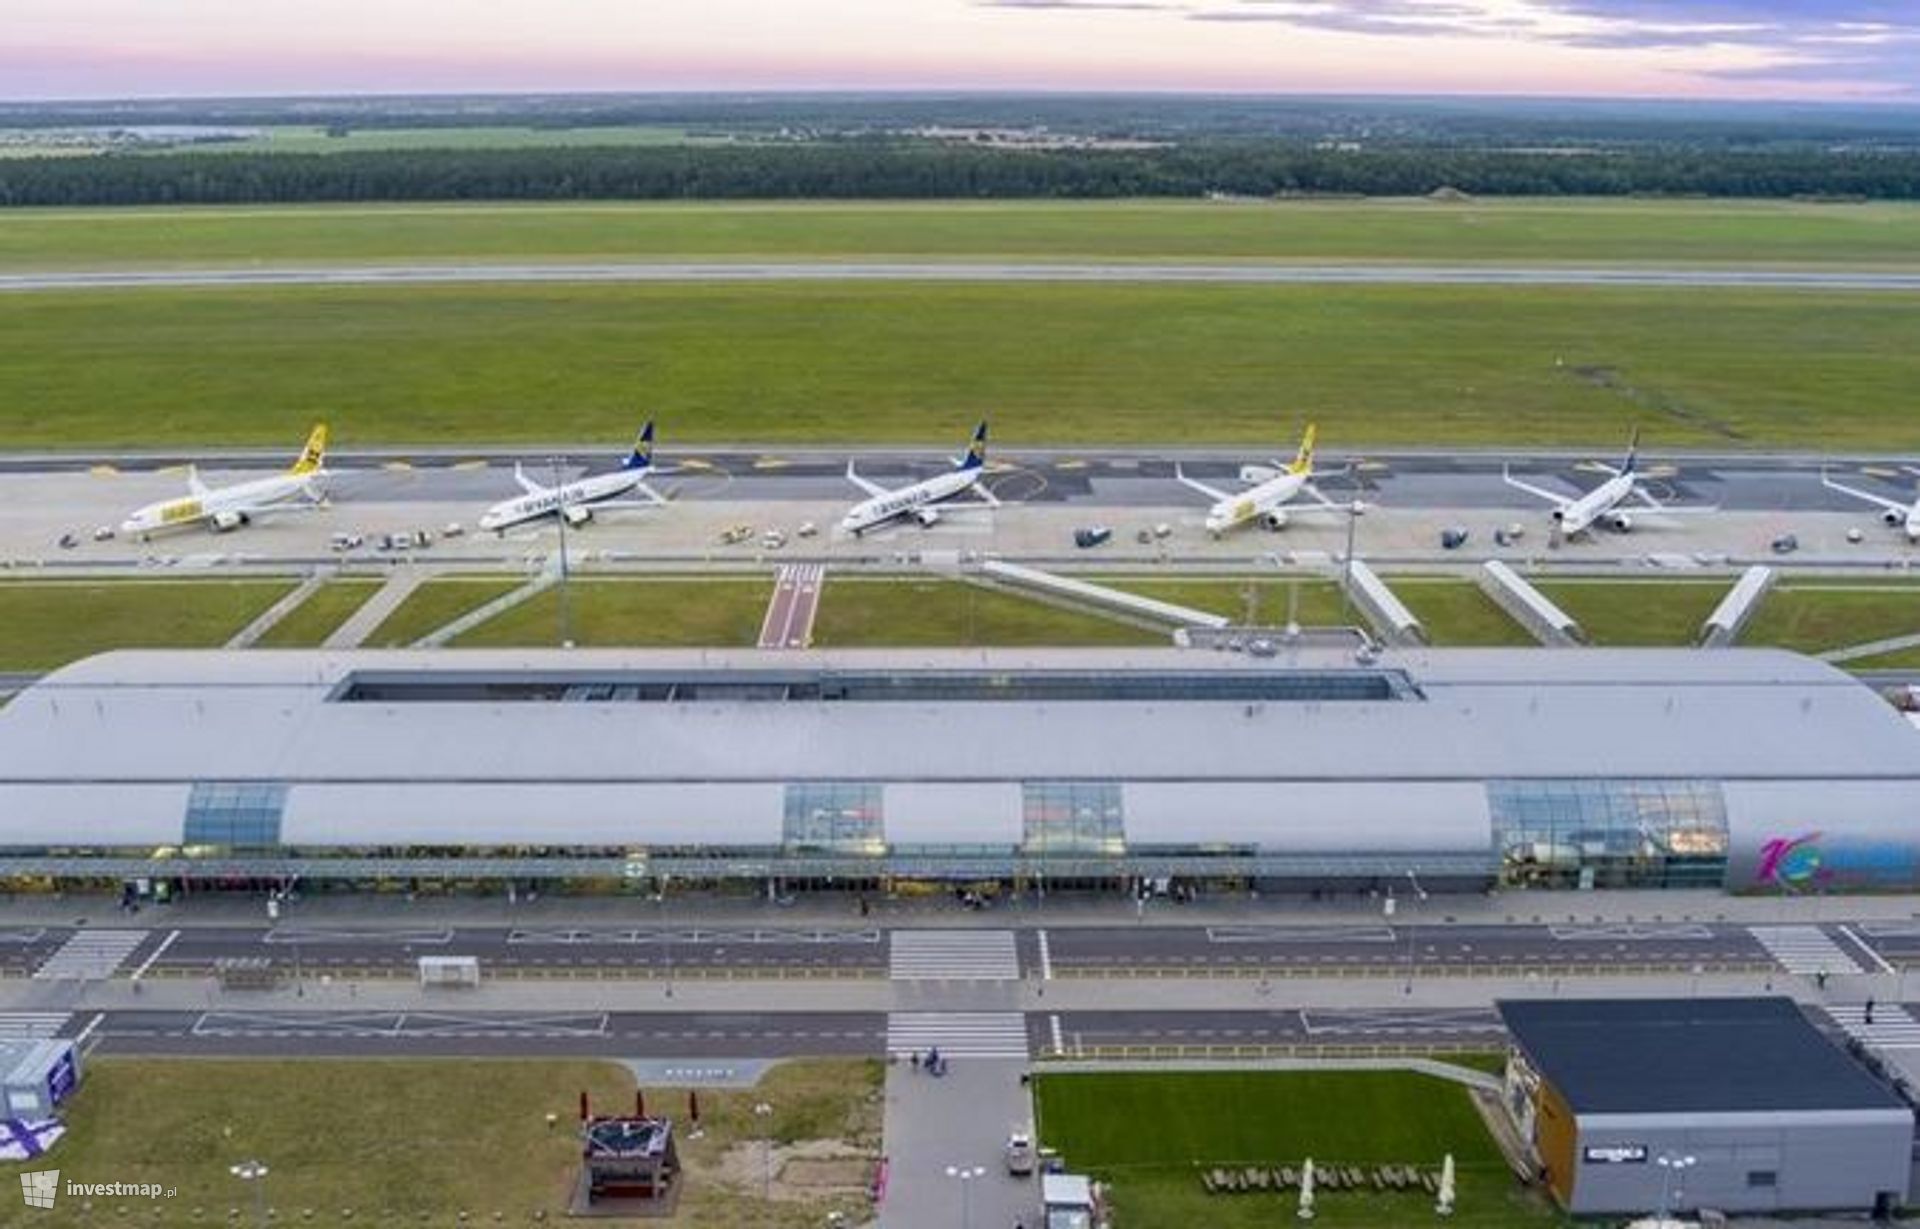 Plan Generalny portu lotniczego Warszawa-Modlin zatwierdzony. Mazowieckie lotnisko z szansą na rozbudowę i rozwój